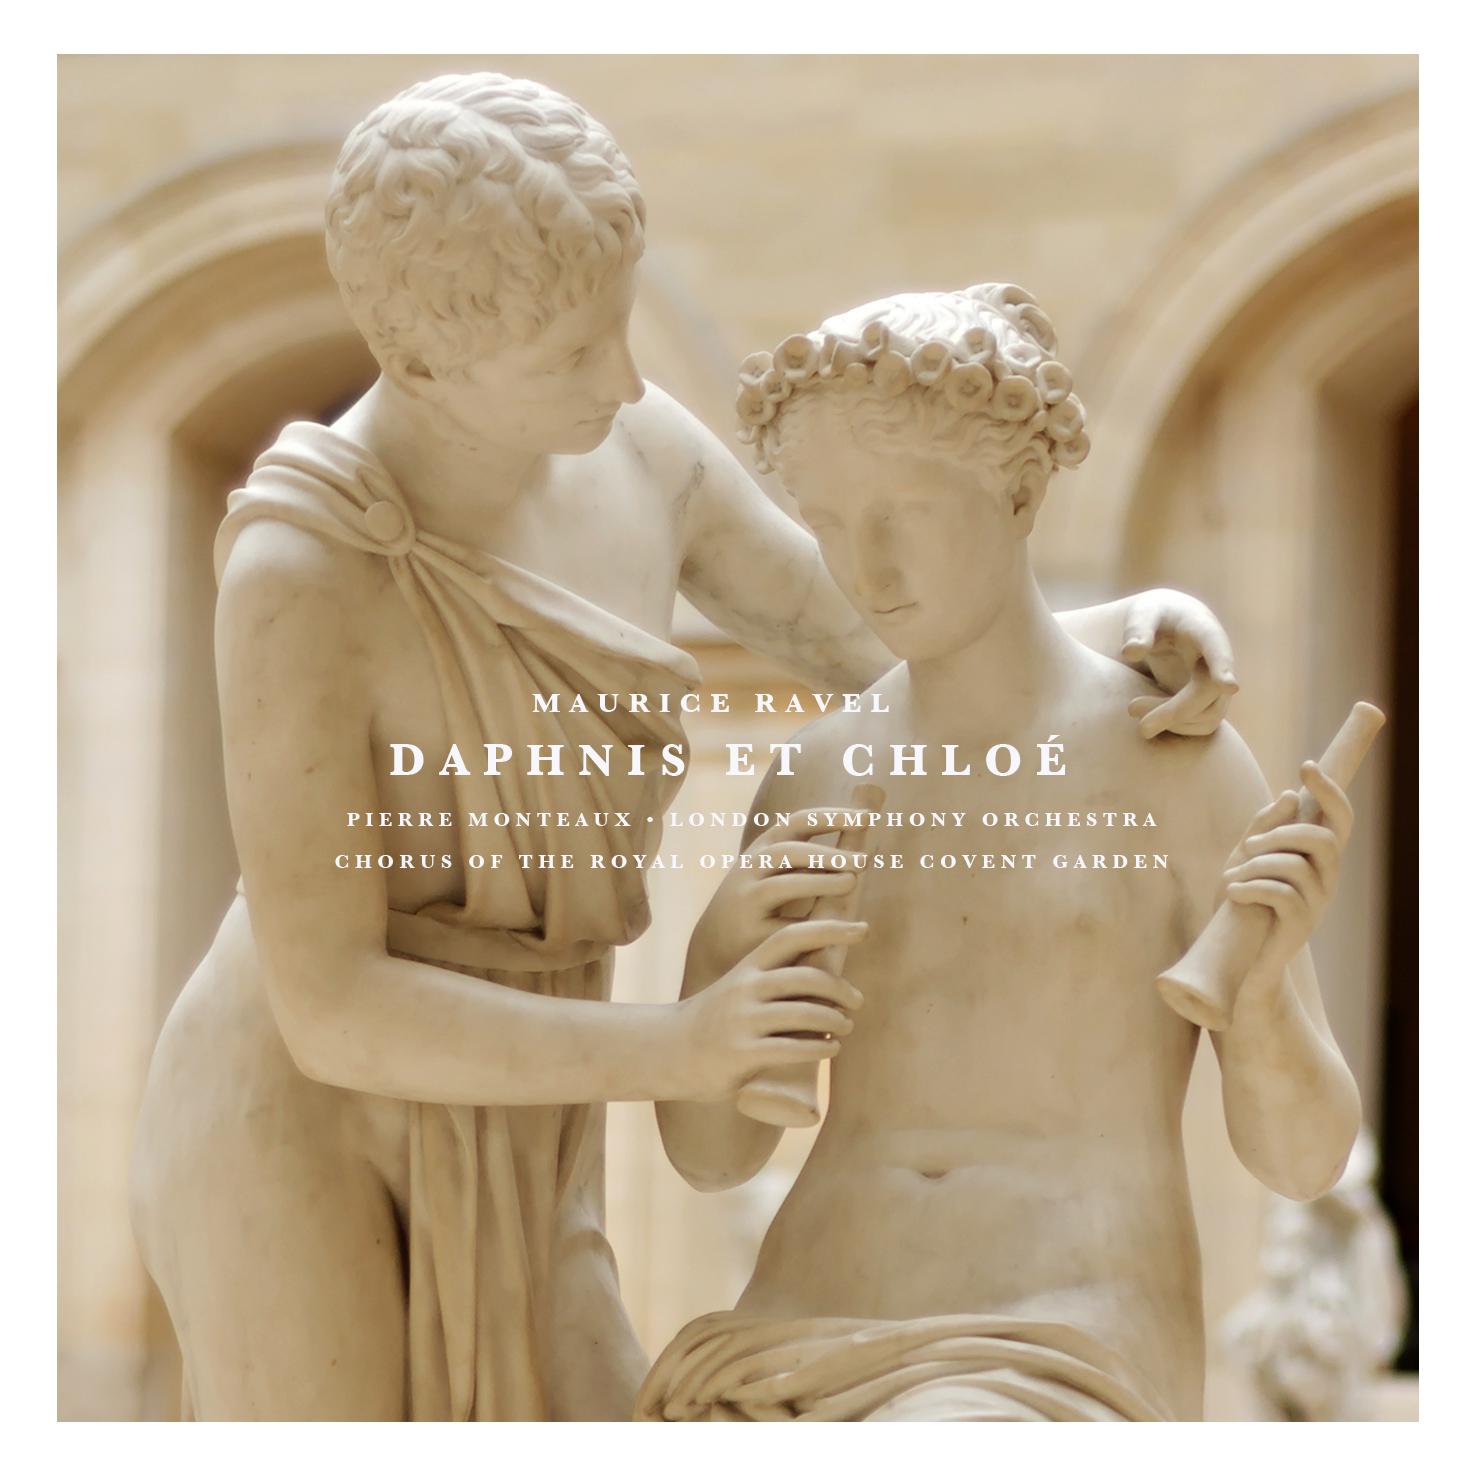 Daphnis Et Chloe: Part I " Danse de Lyce ion"